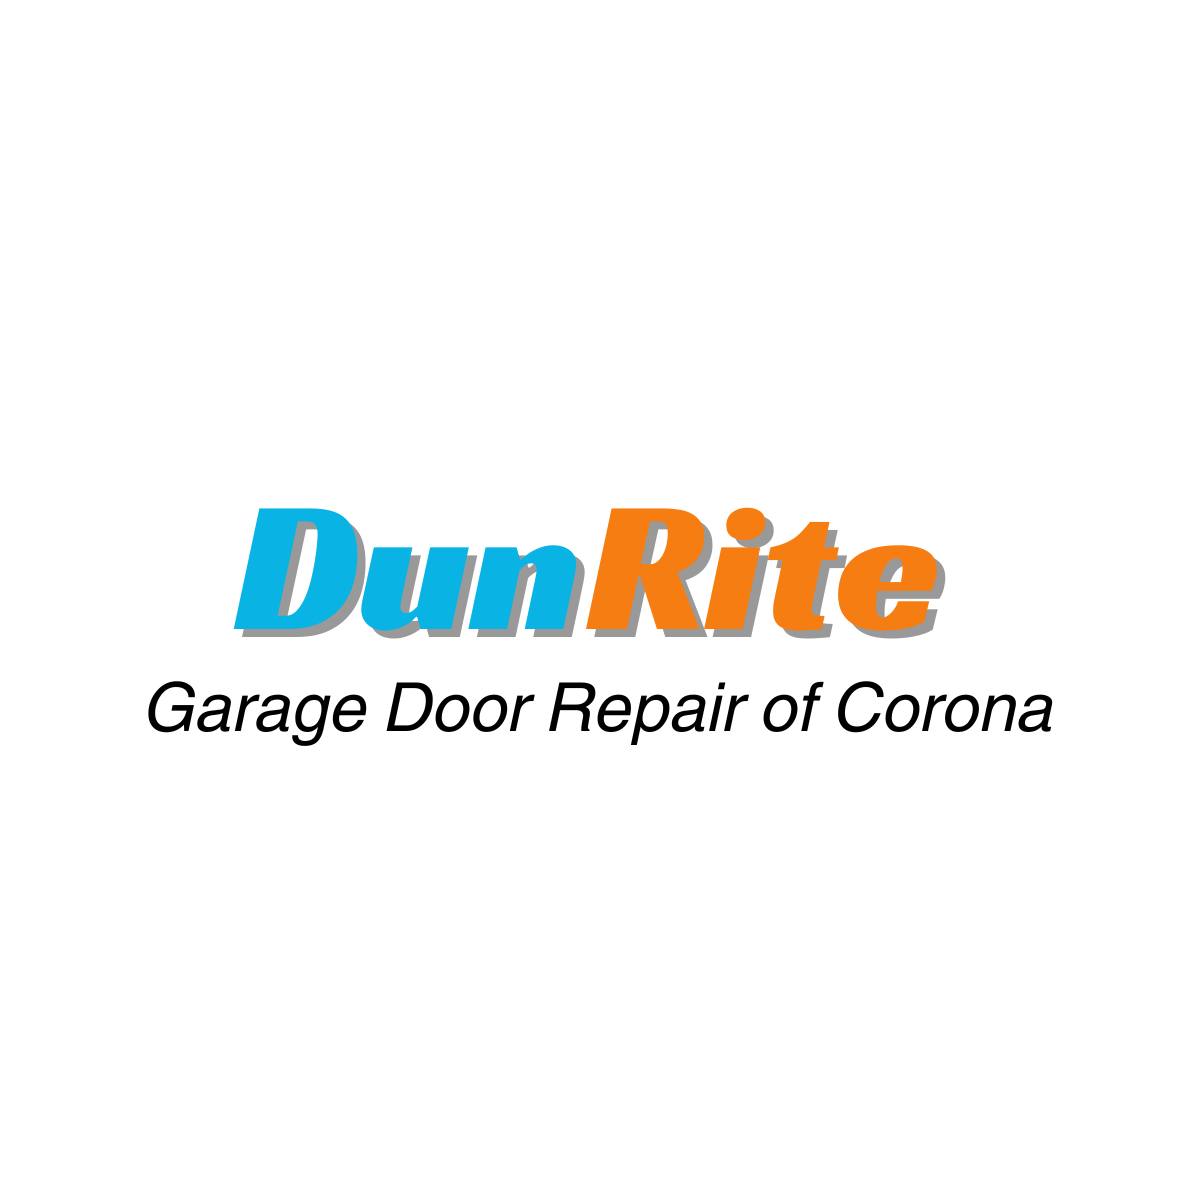 Dunrite Garage Door Repair of Corona